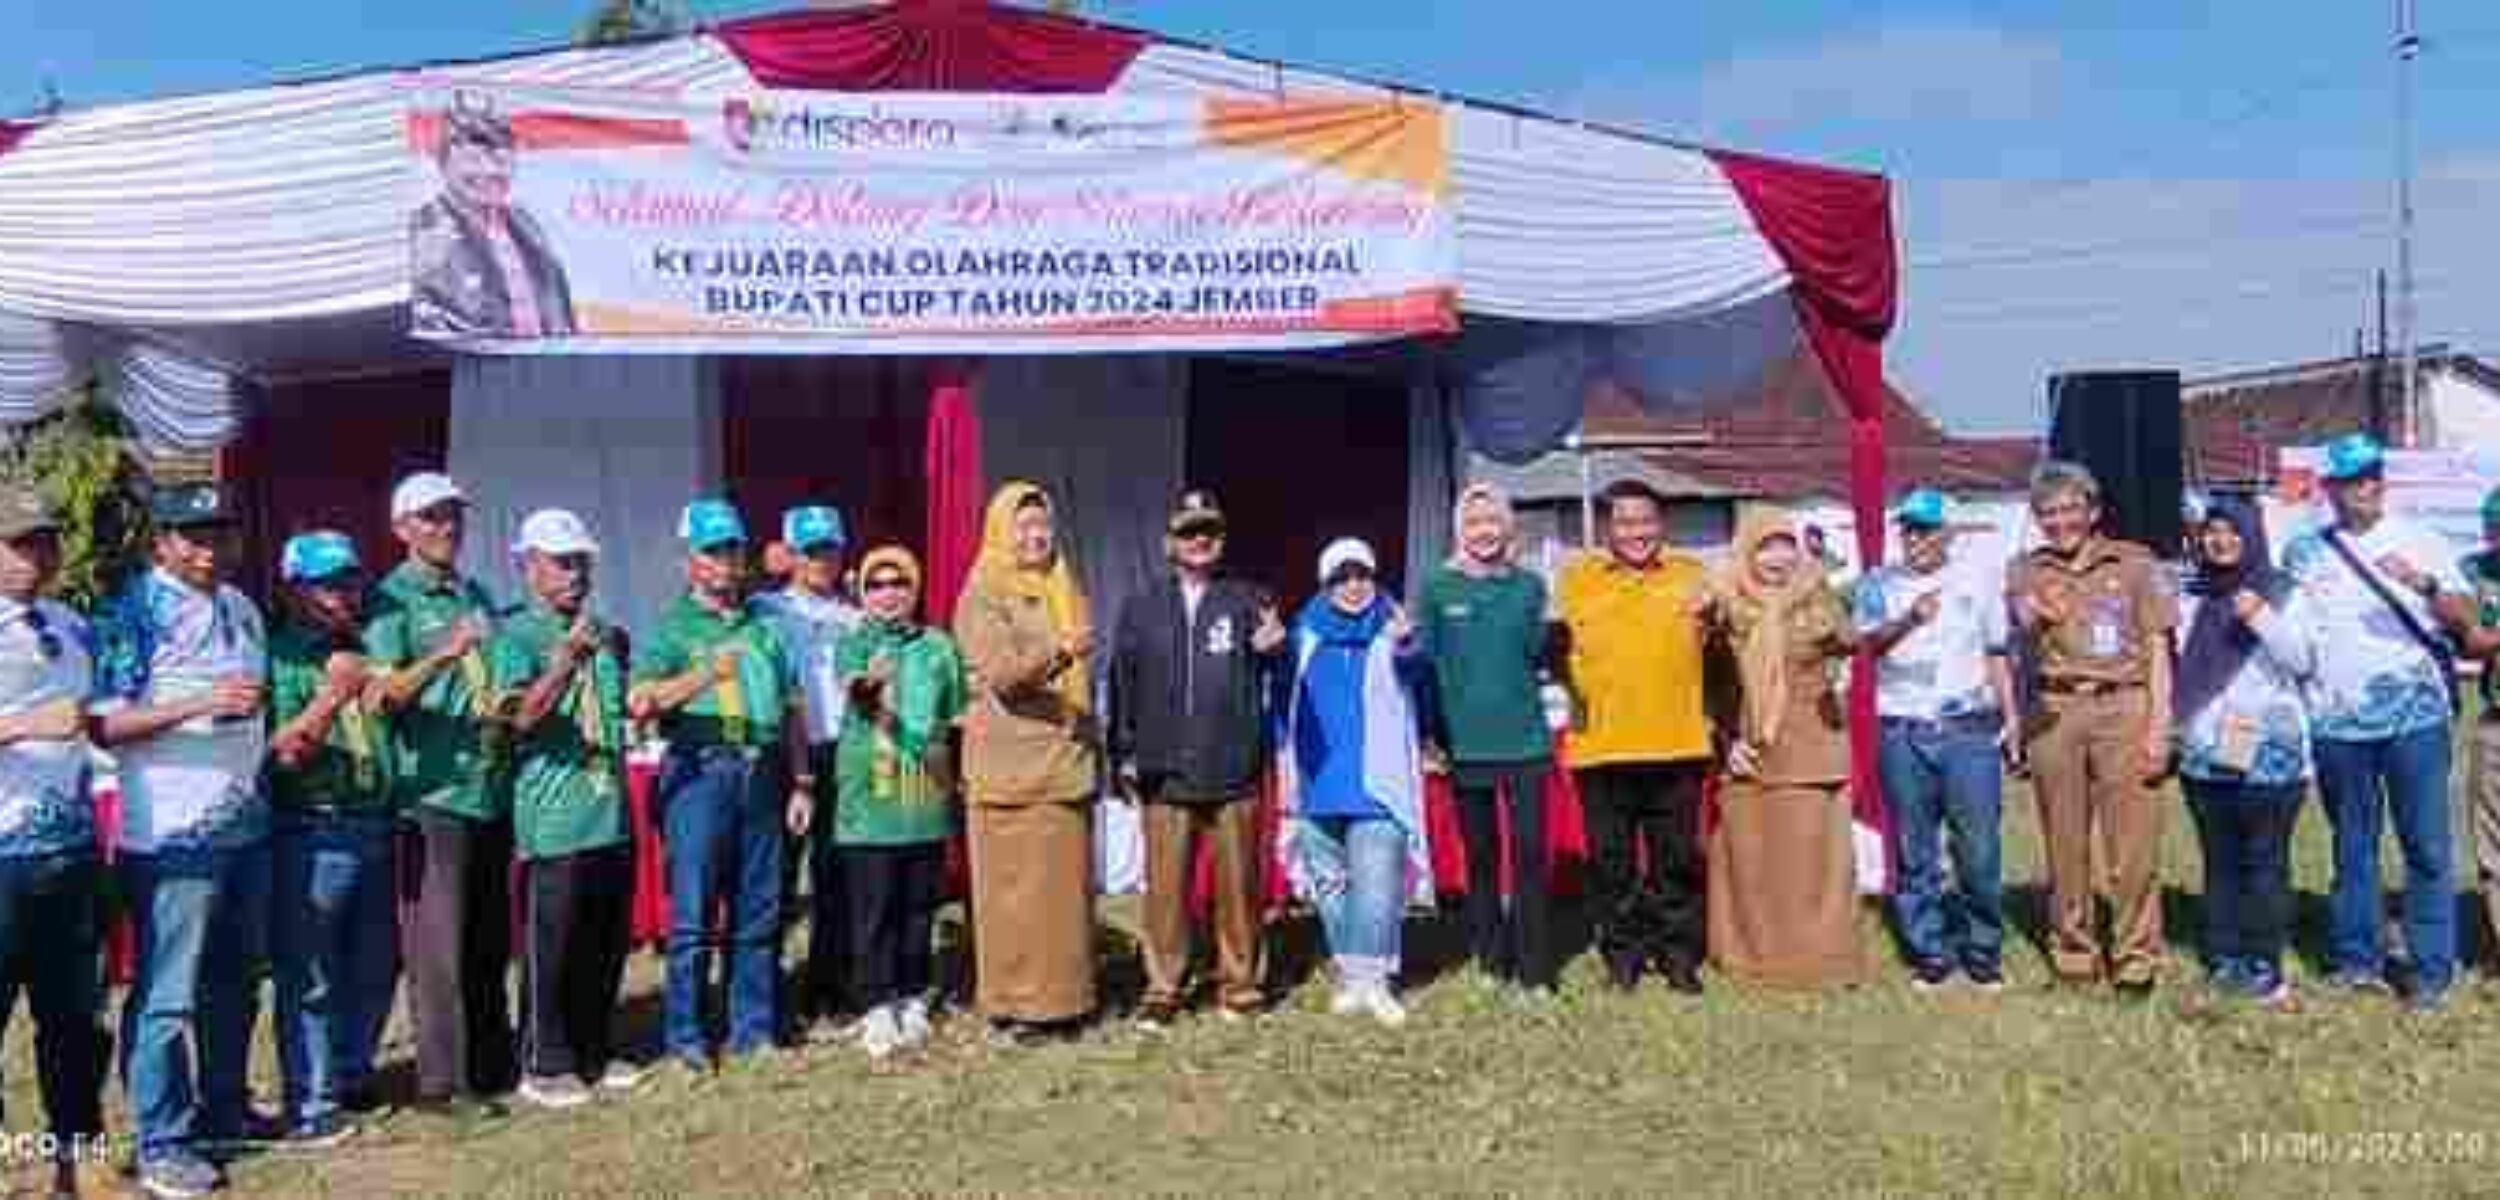 Kejuaraan Olahraga Tradisional Piala Bupati Jember, Fortina Surabaya dan Bondowoso Tampil Digdaya